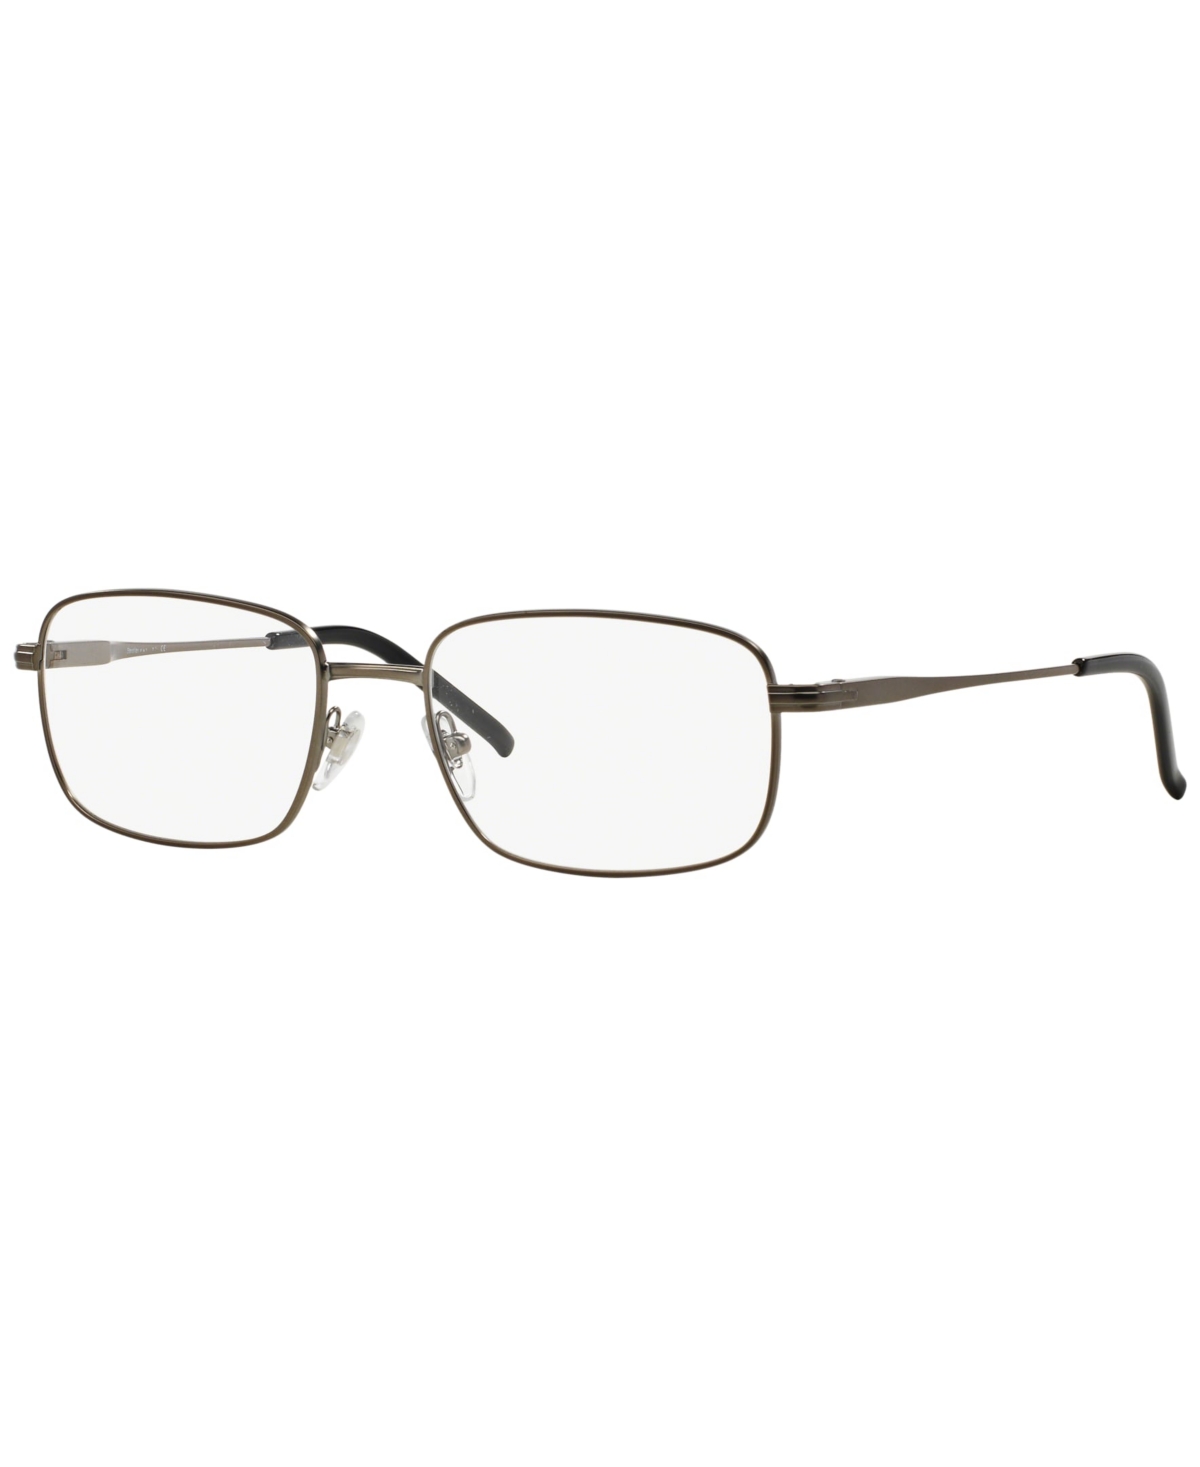 Steroflex Men's Eyeglasses, SF2197 - Matte Gunmetal